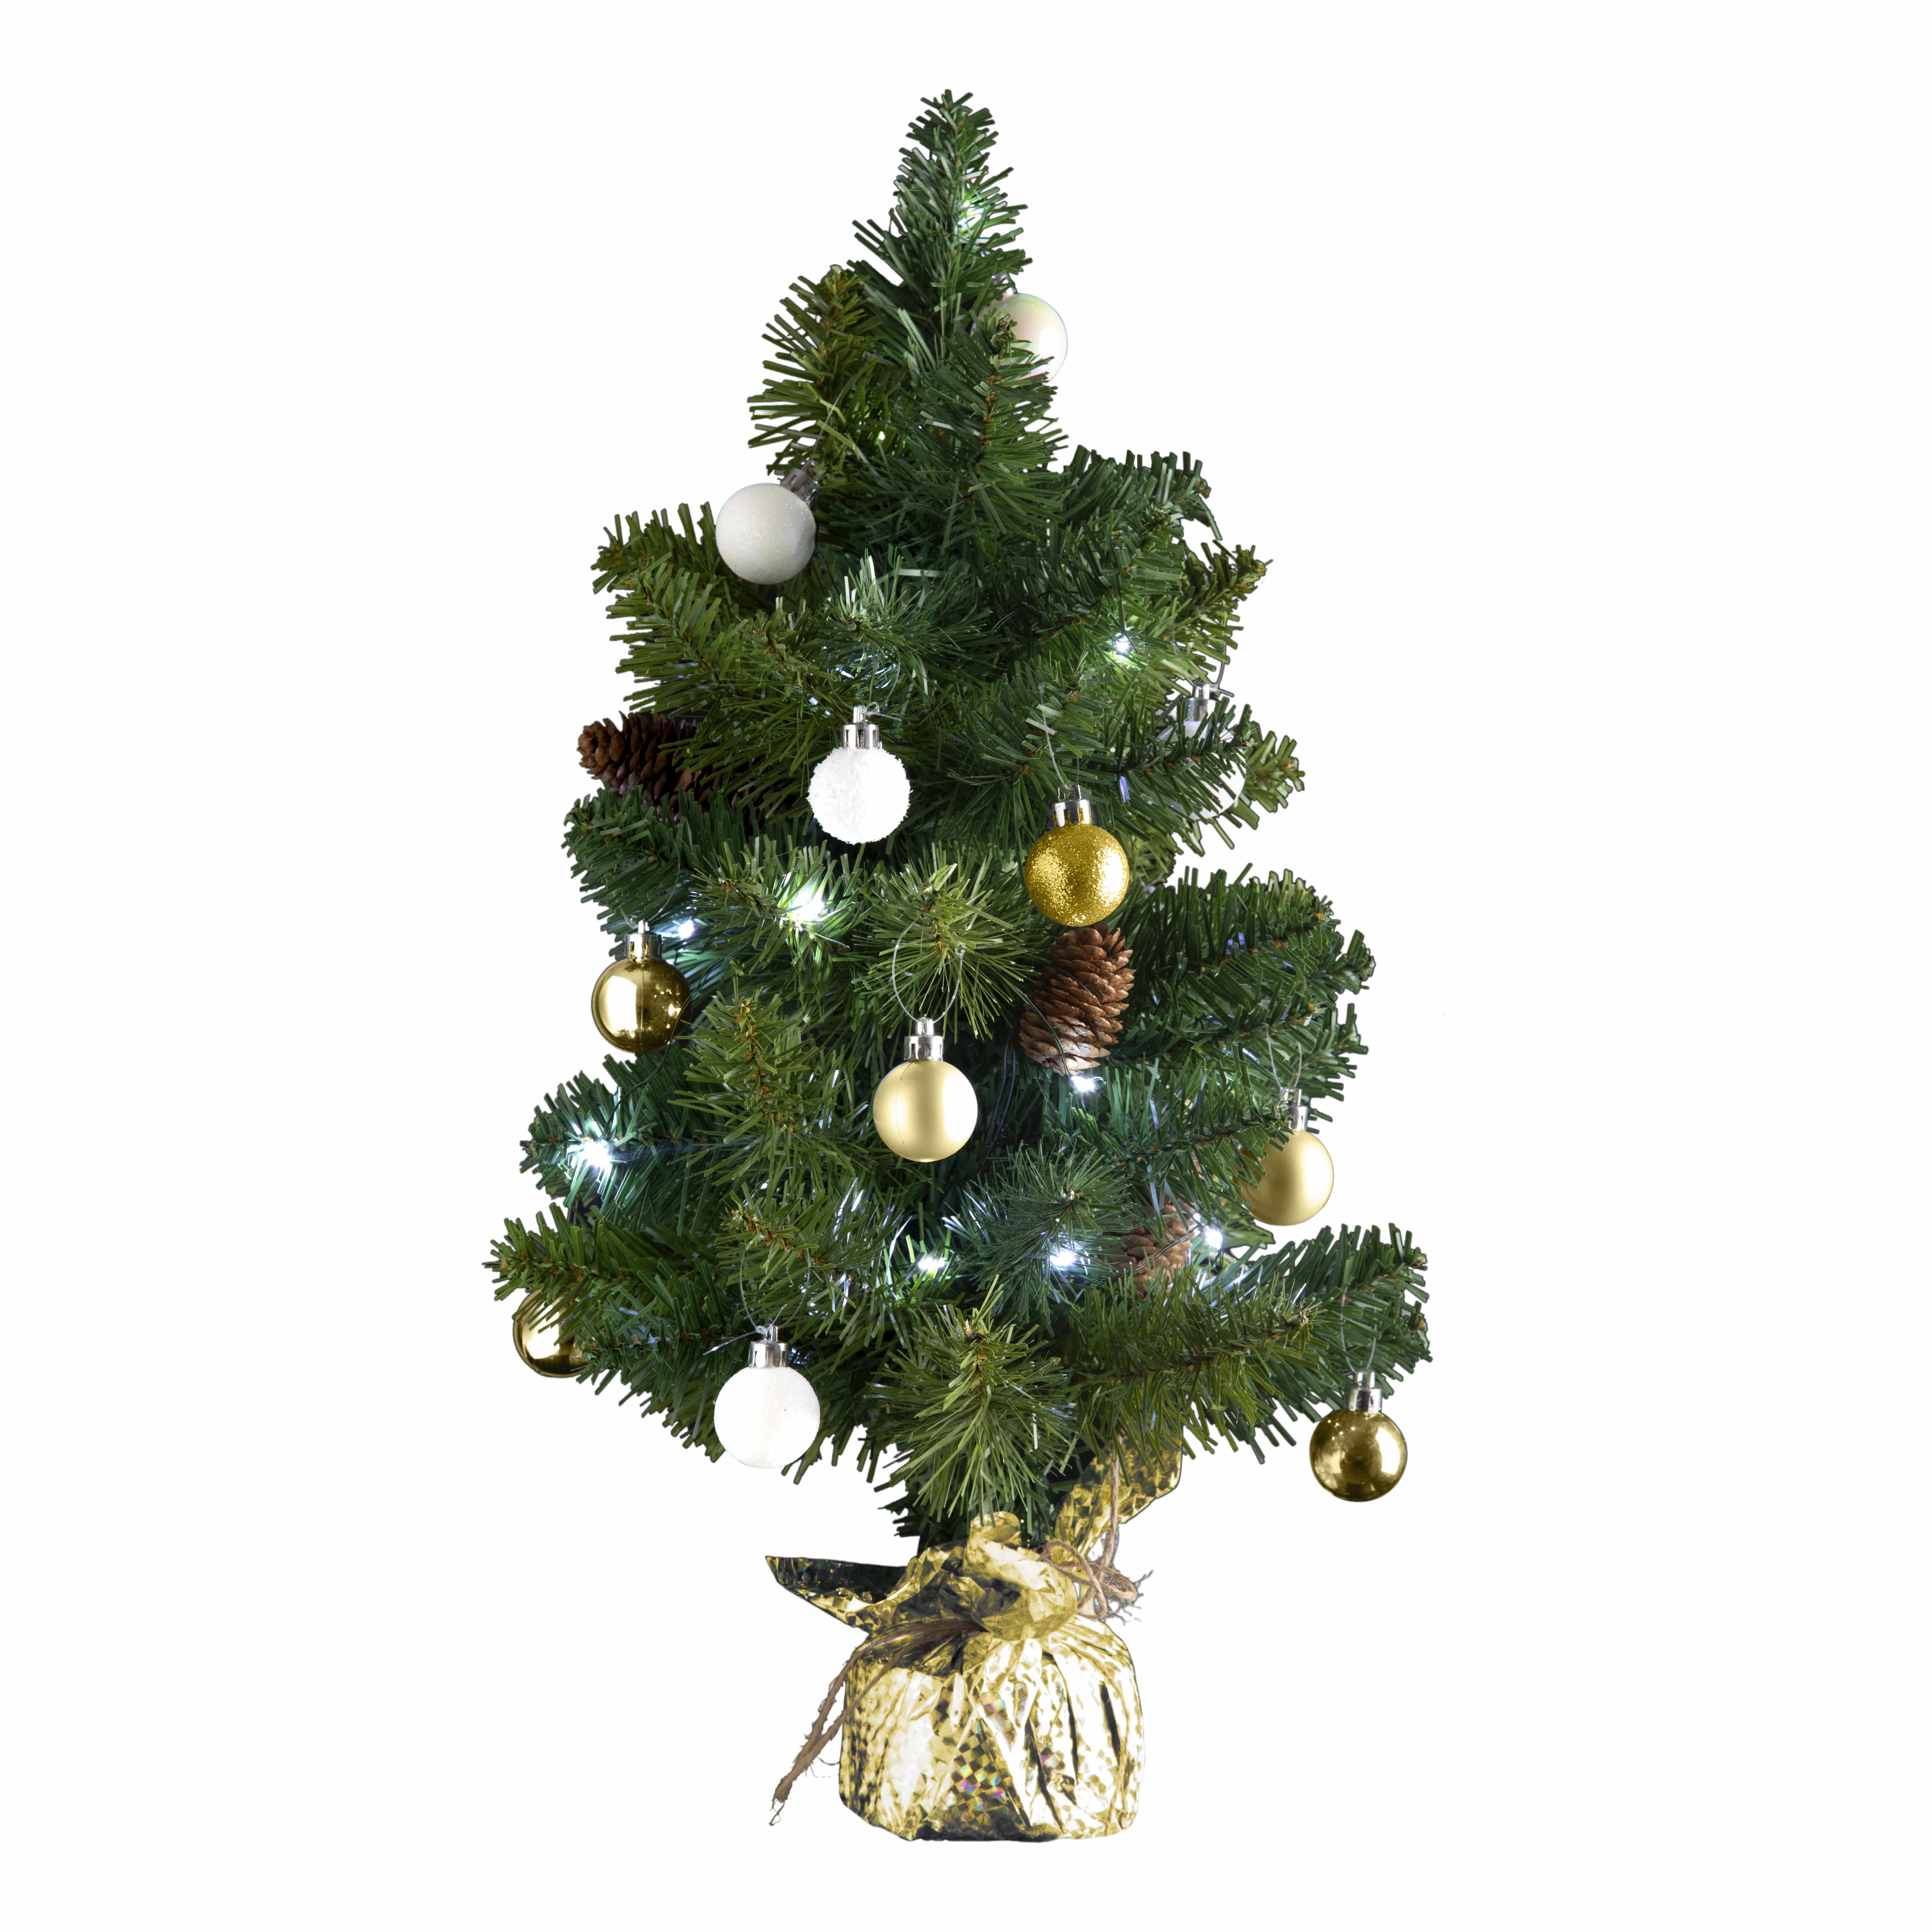 4goodz kunstkerstboom met licht en versiering 50cm hoog - Goud/Wit